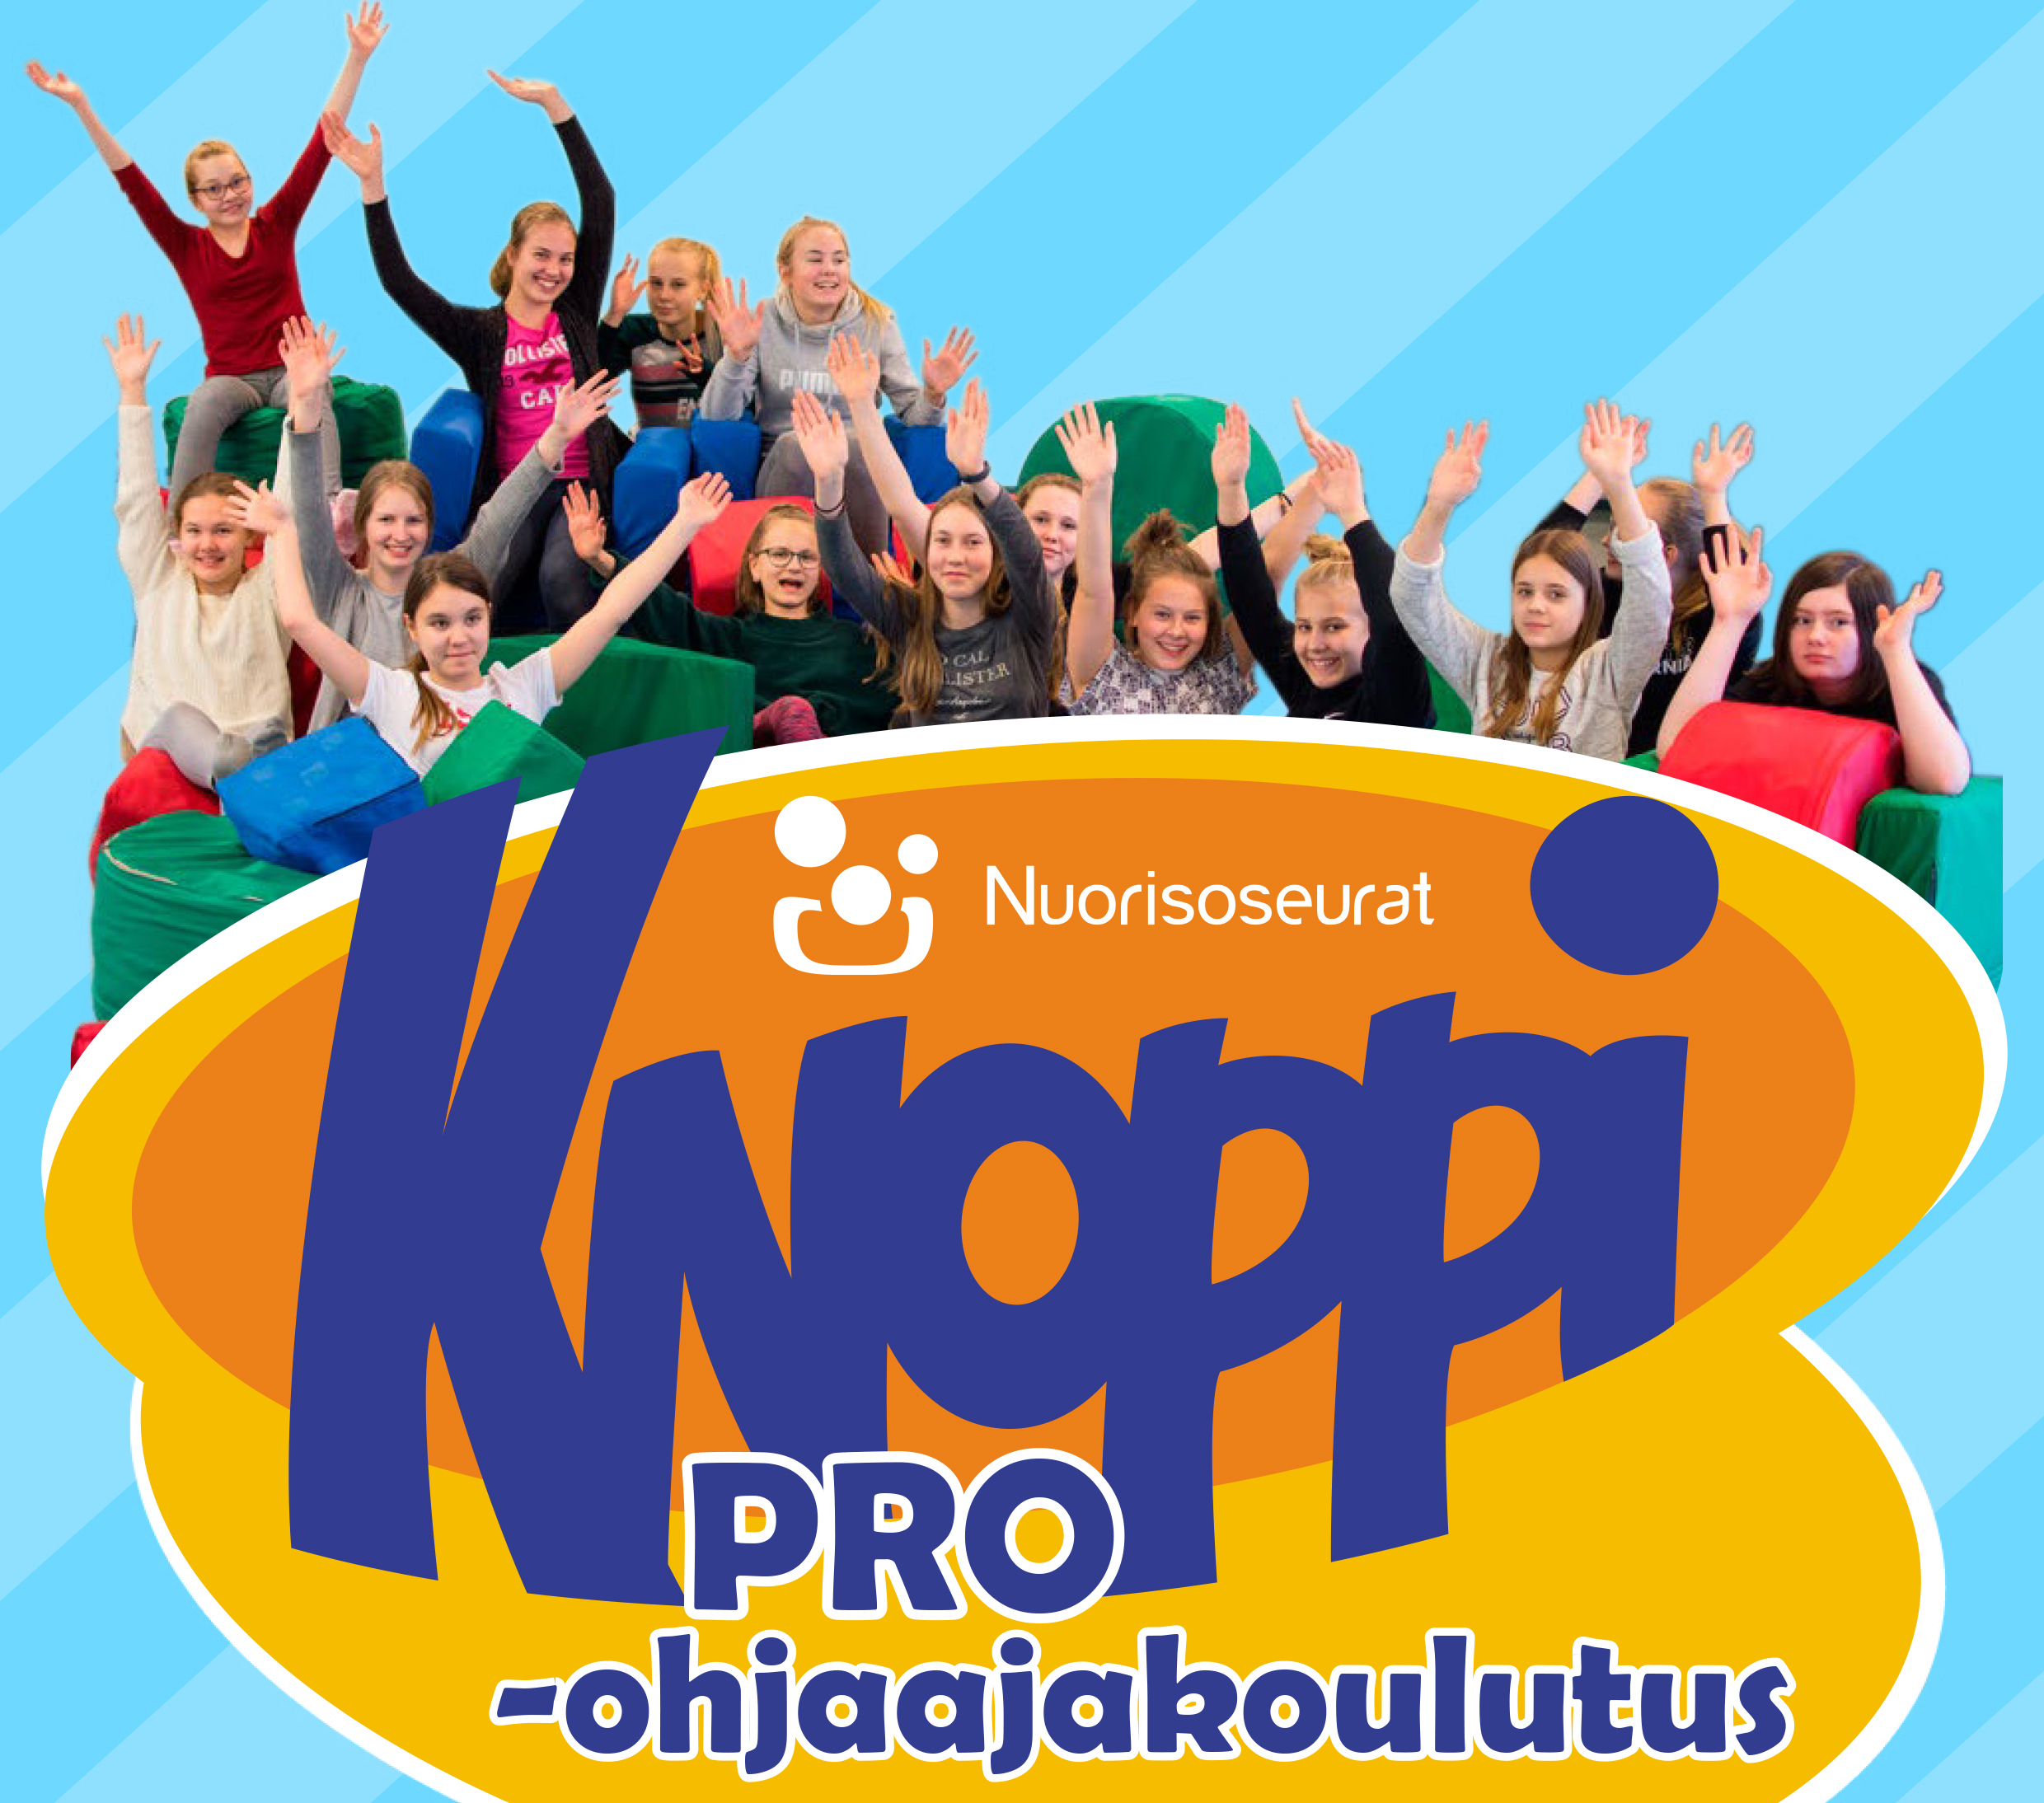 KNoppiPro-ohjaajakoulutuksen logo ja iloinen ihmisjoukko.